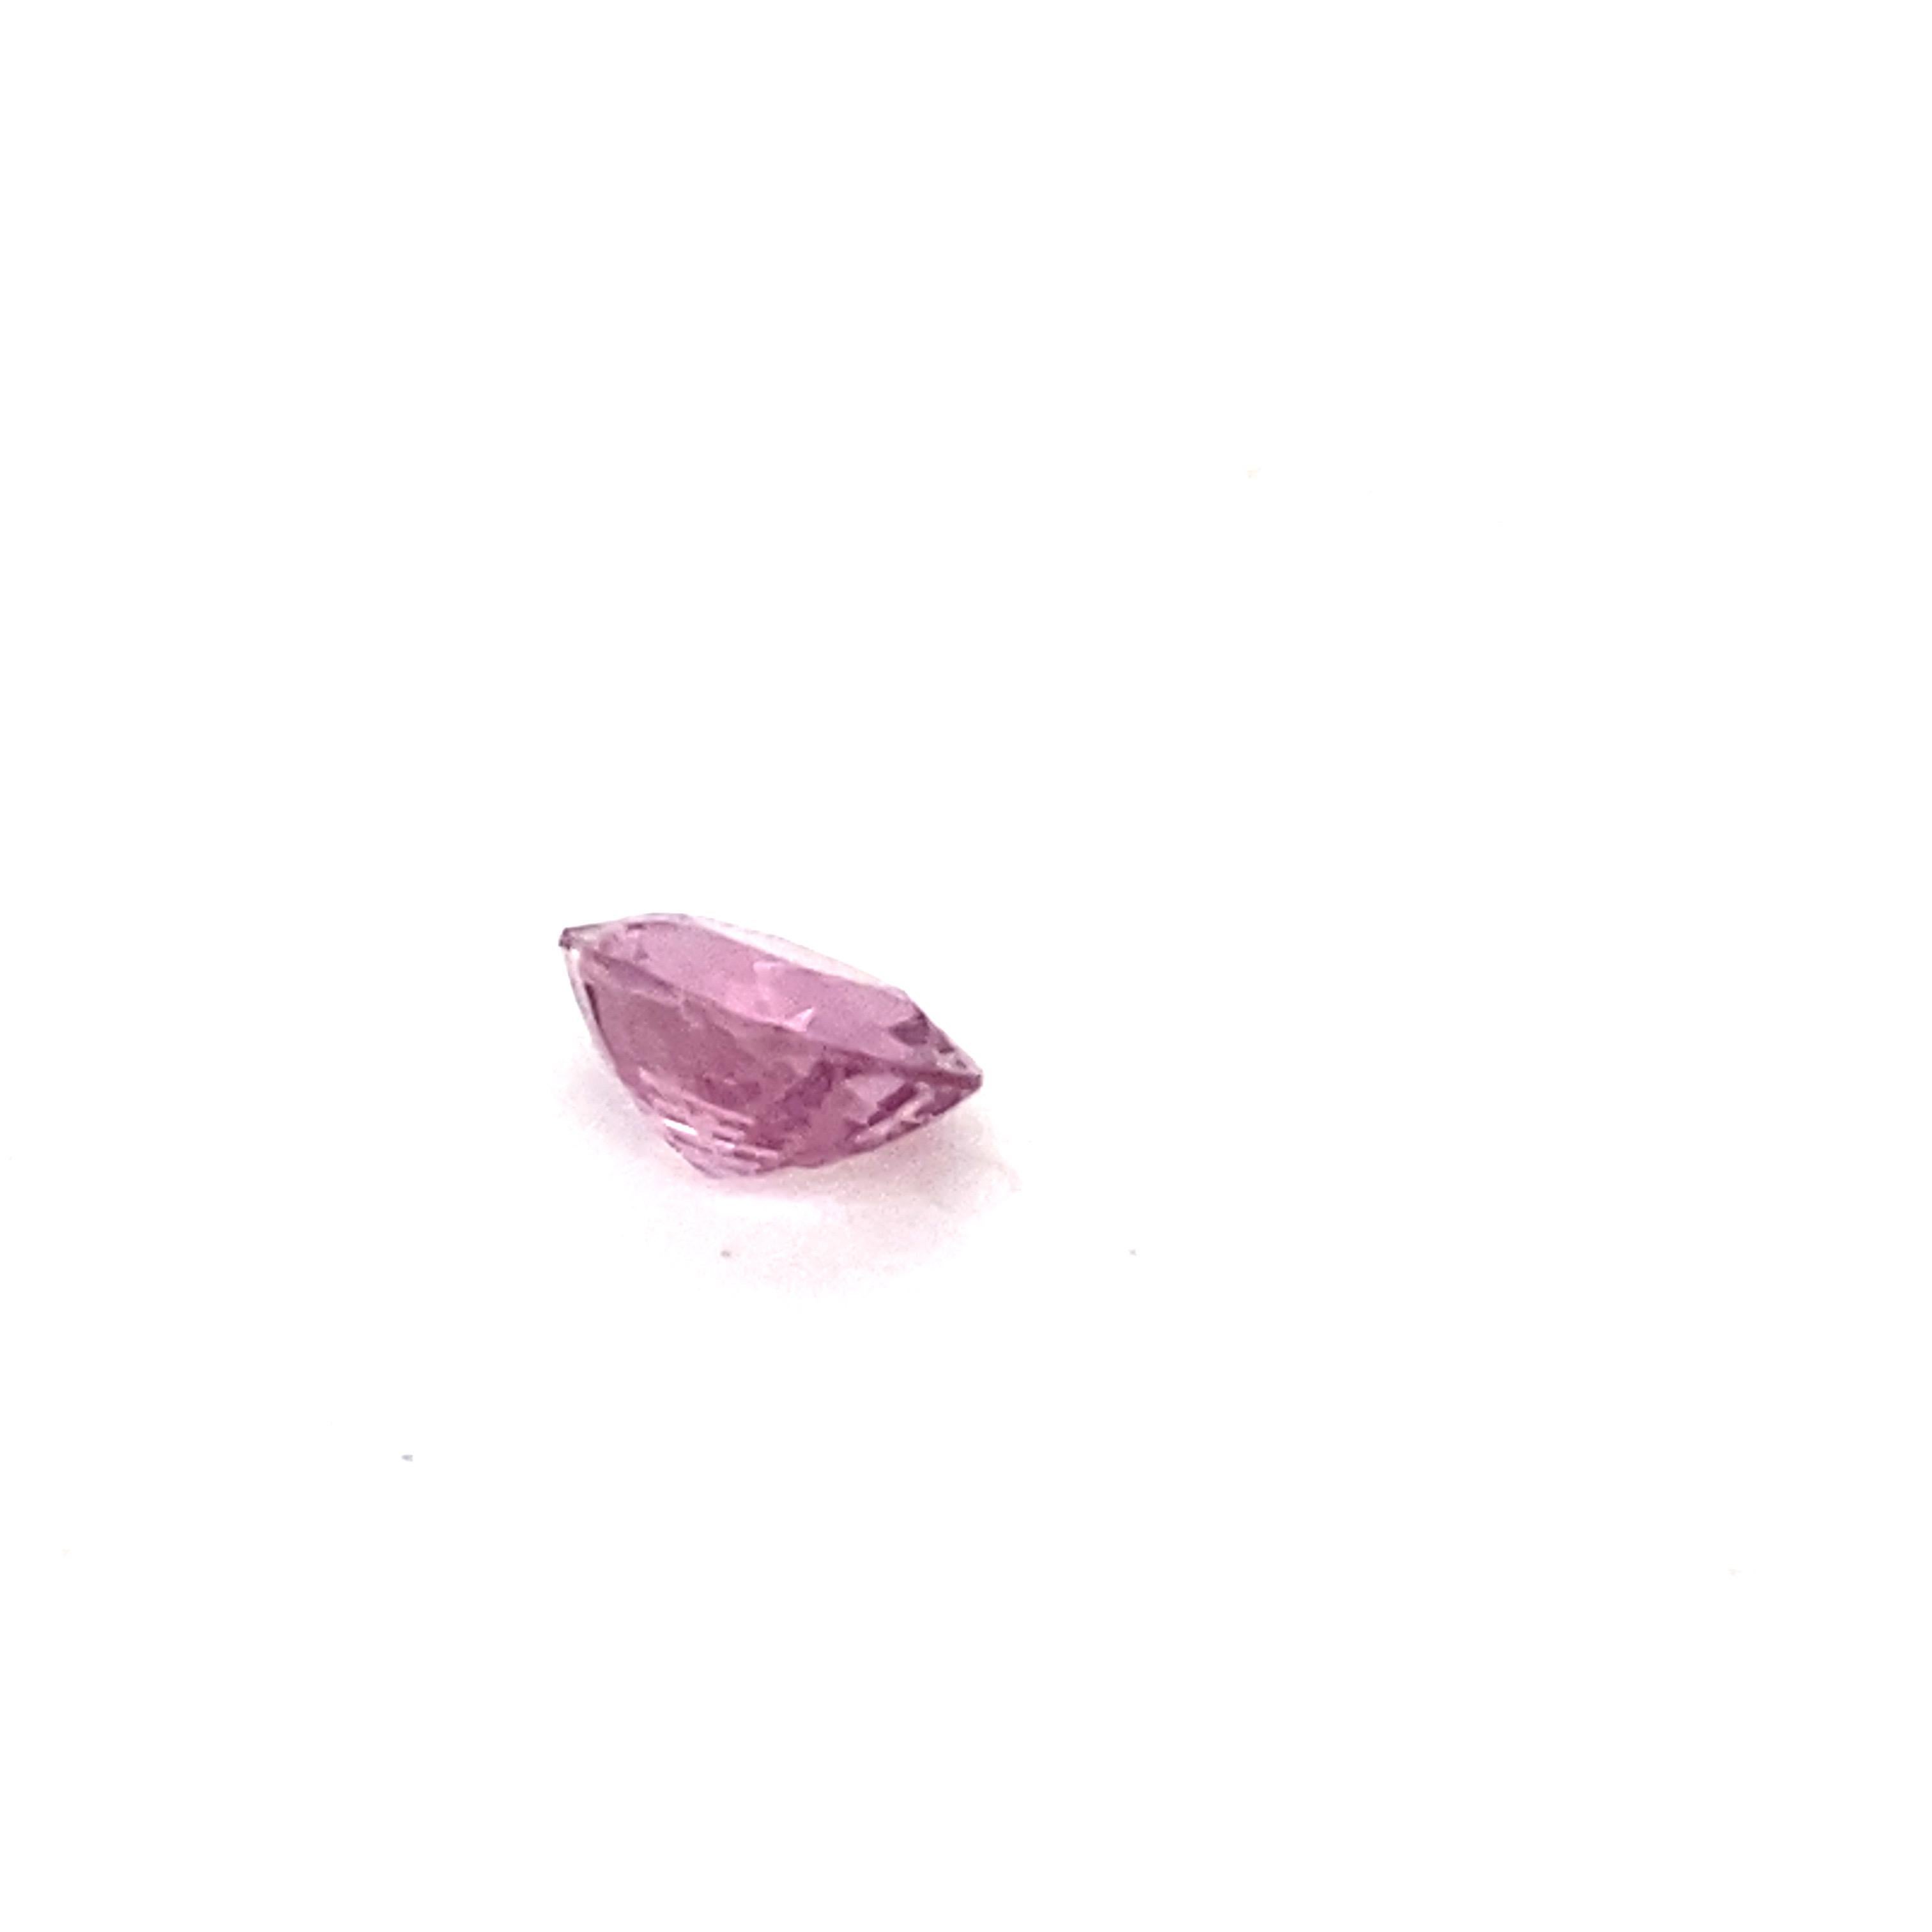 2.0 Carat Oval Shape Natural Pink Spinel Loose Gemstone For Sale 2